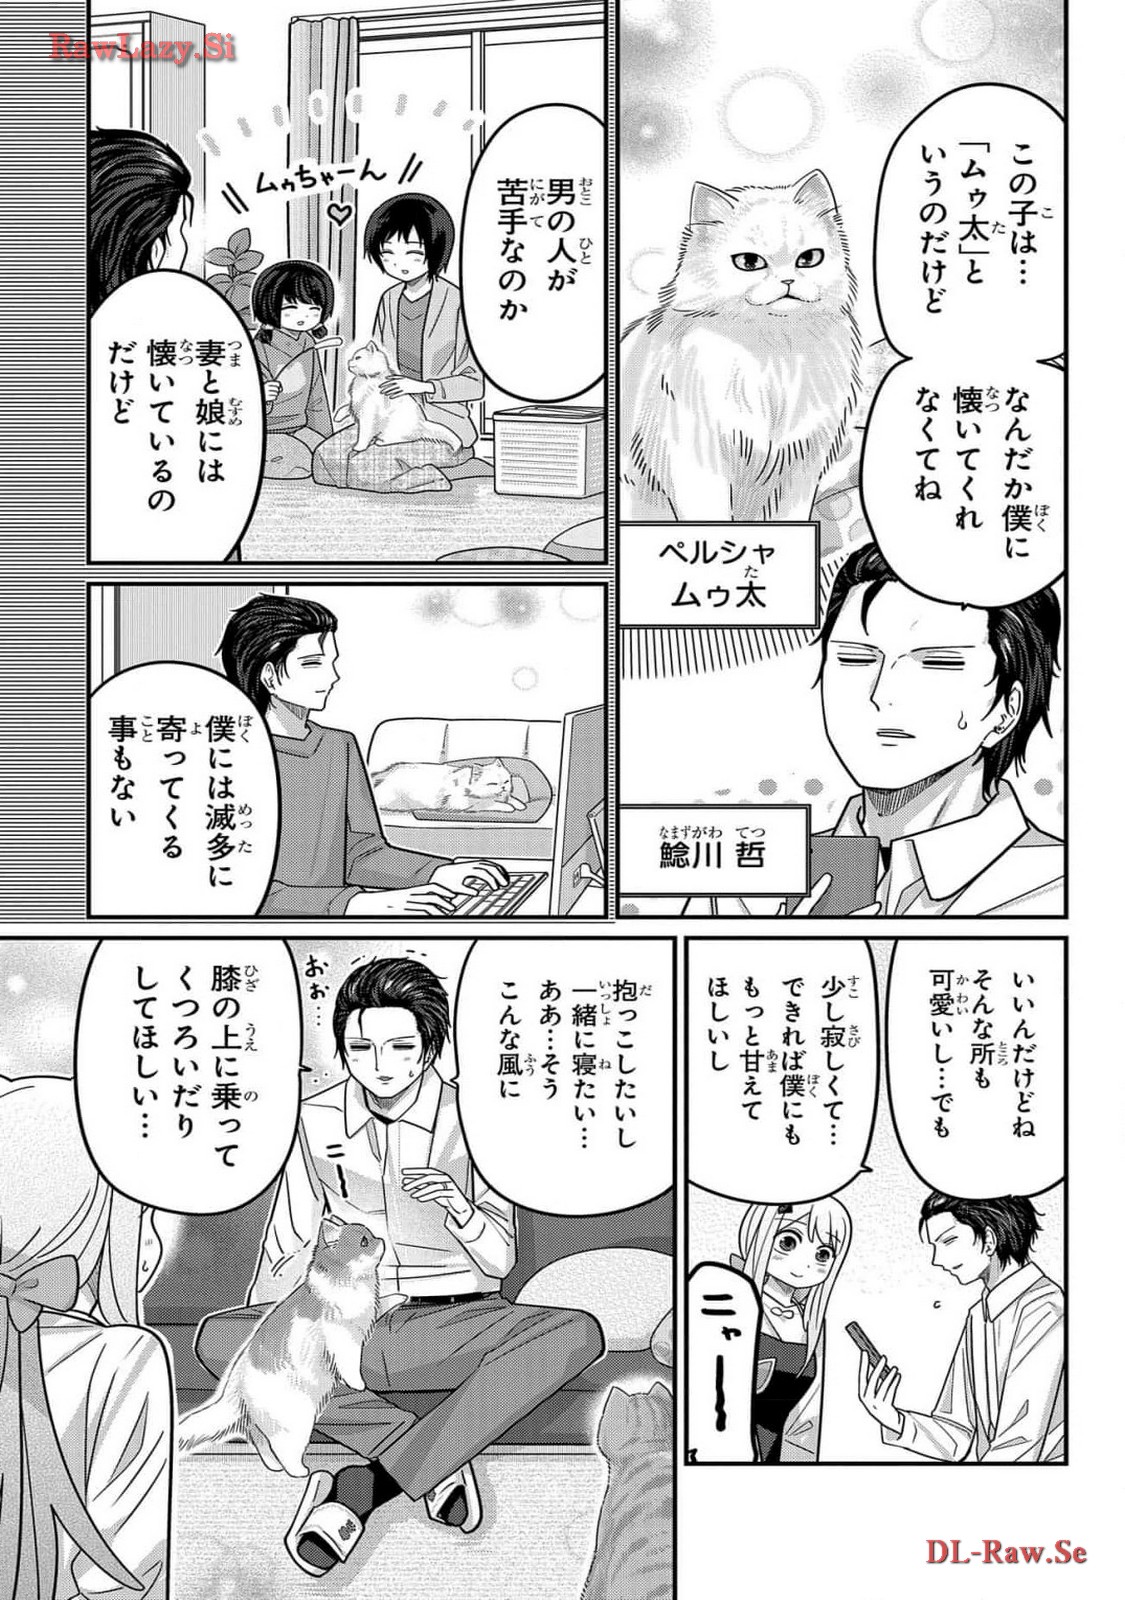 Kawaisugi Crisis - Chapter 99 - Page 7